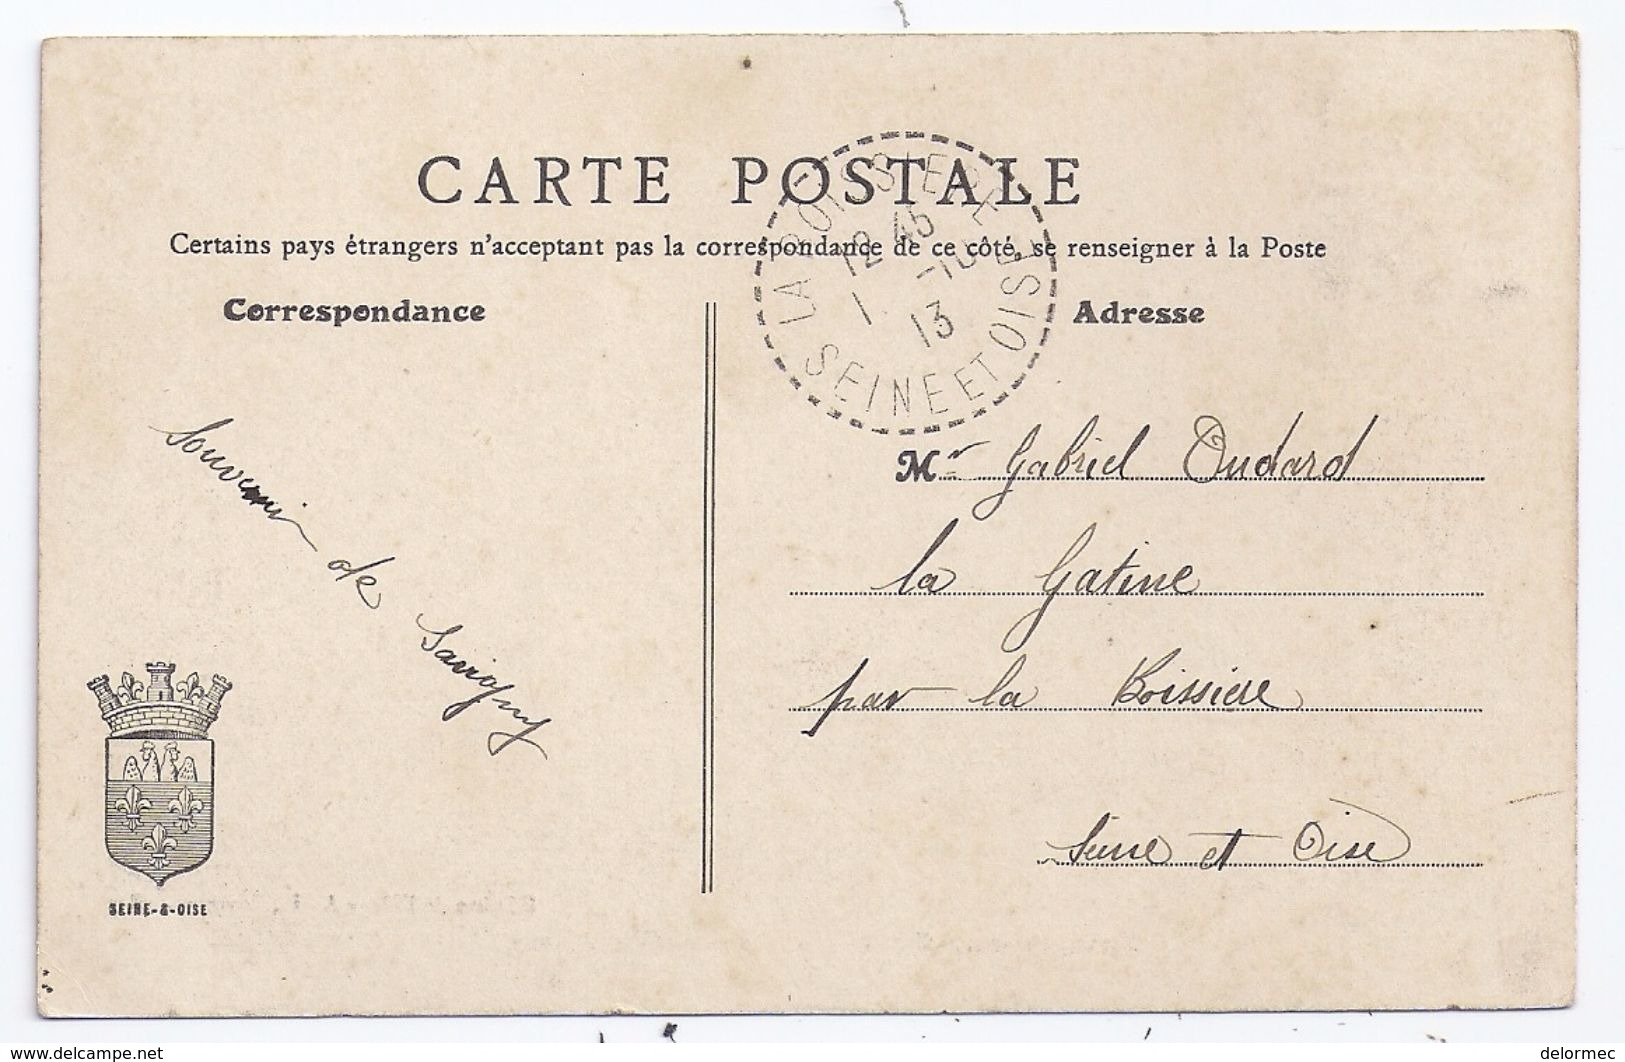 CPA Savigny Sur Orge Château De Grand Vaux écrite Timbrée 1913 - Savigny Sur Orge